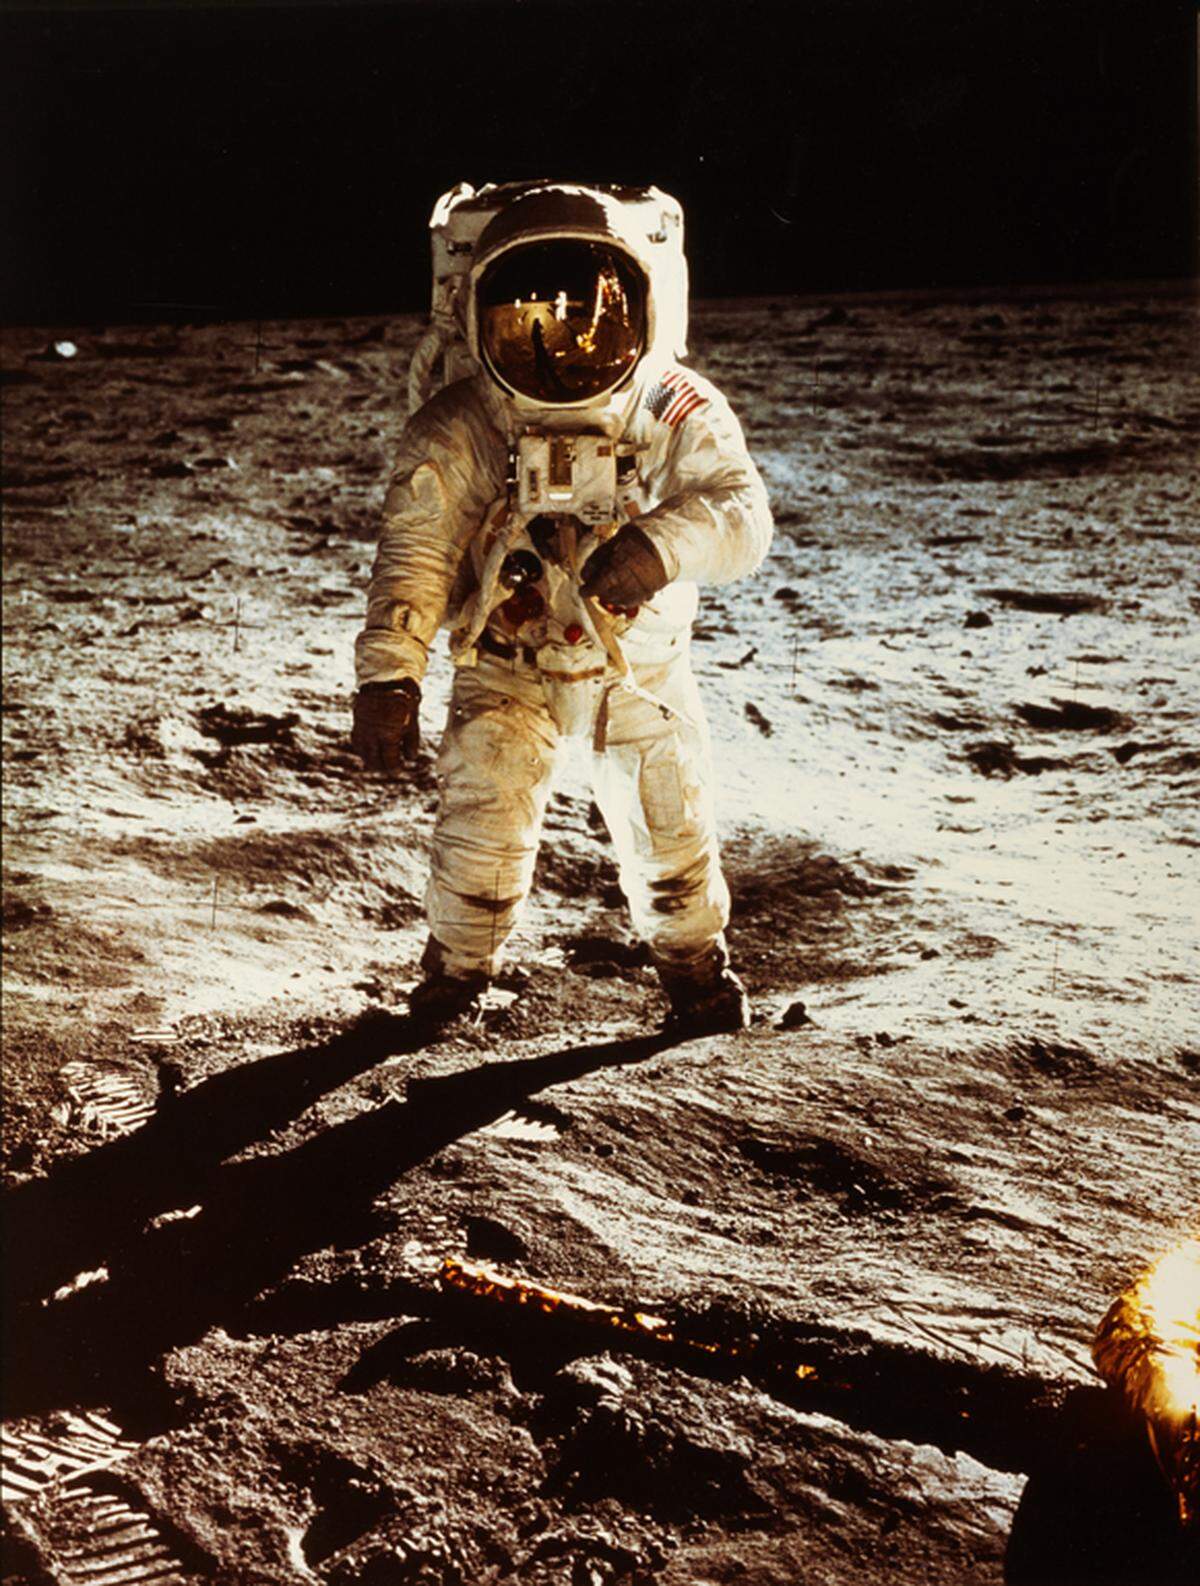 Ergänzend zur Ausstellung werden Fotografien der Mission Apollo 11 mit der ersten Landung eines Menschen auf dem Mond 1969 aus der Sammlung des Fotomuseums gezeigt. Im Bild: Edwin „Buzz“ Aldrin, Sammlung WestLicht, Wien